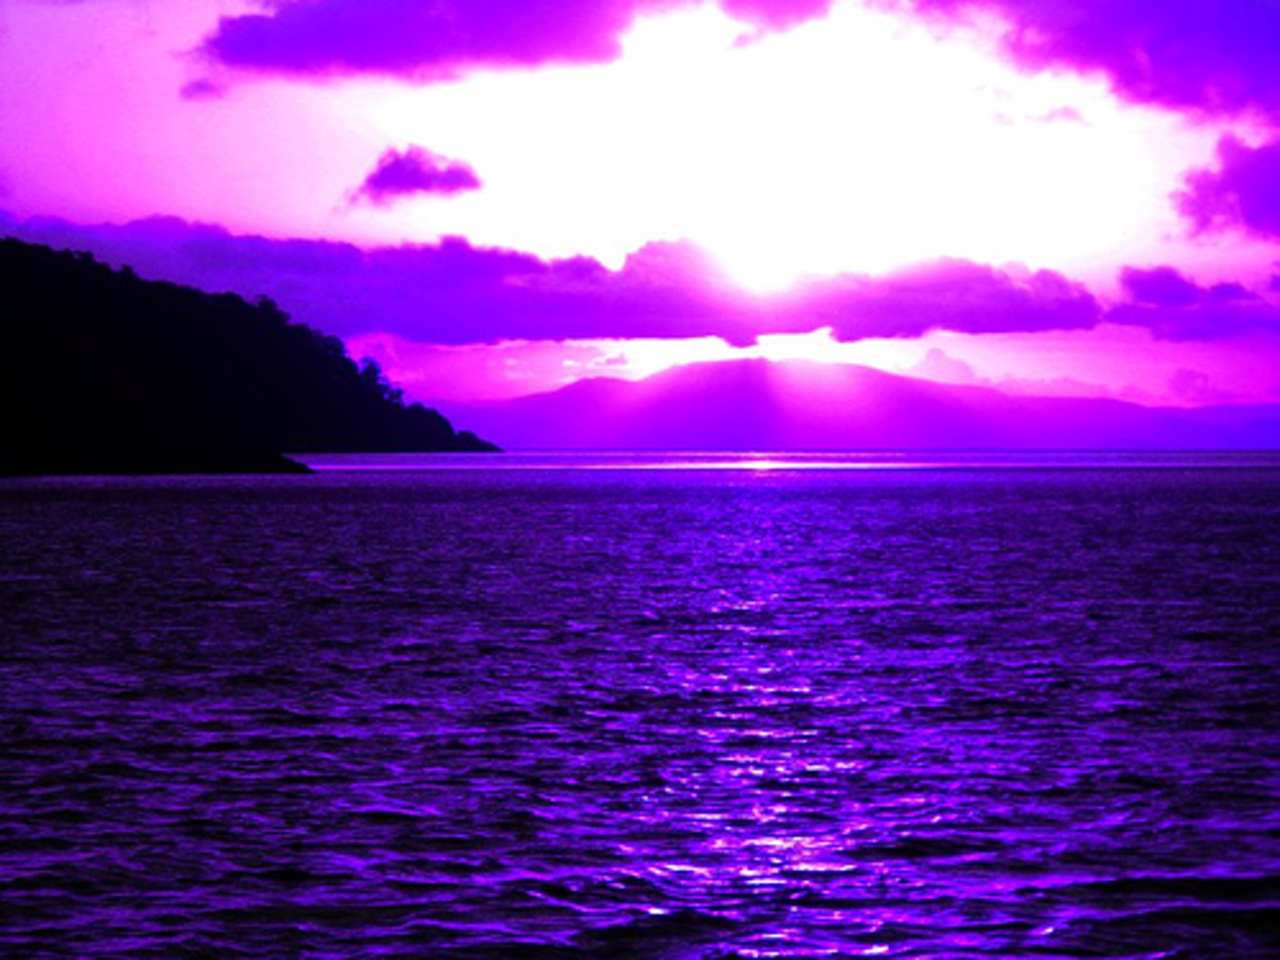 Purple Sunset wallpaper   ForWallpapercom